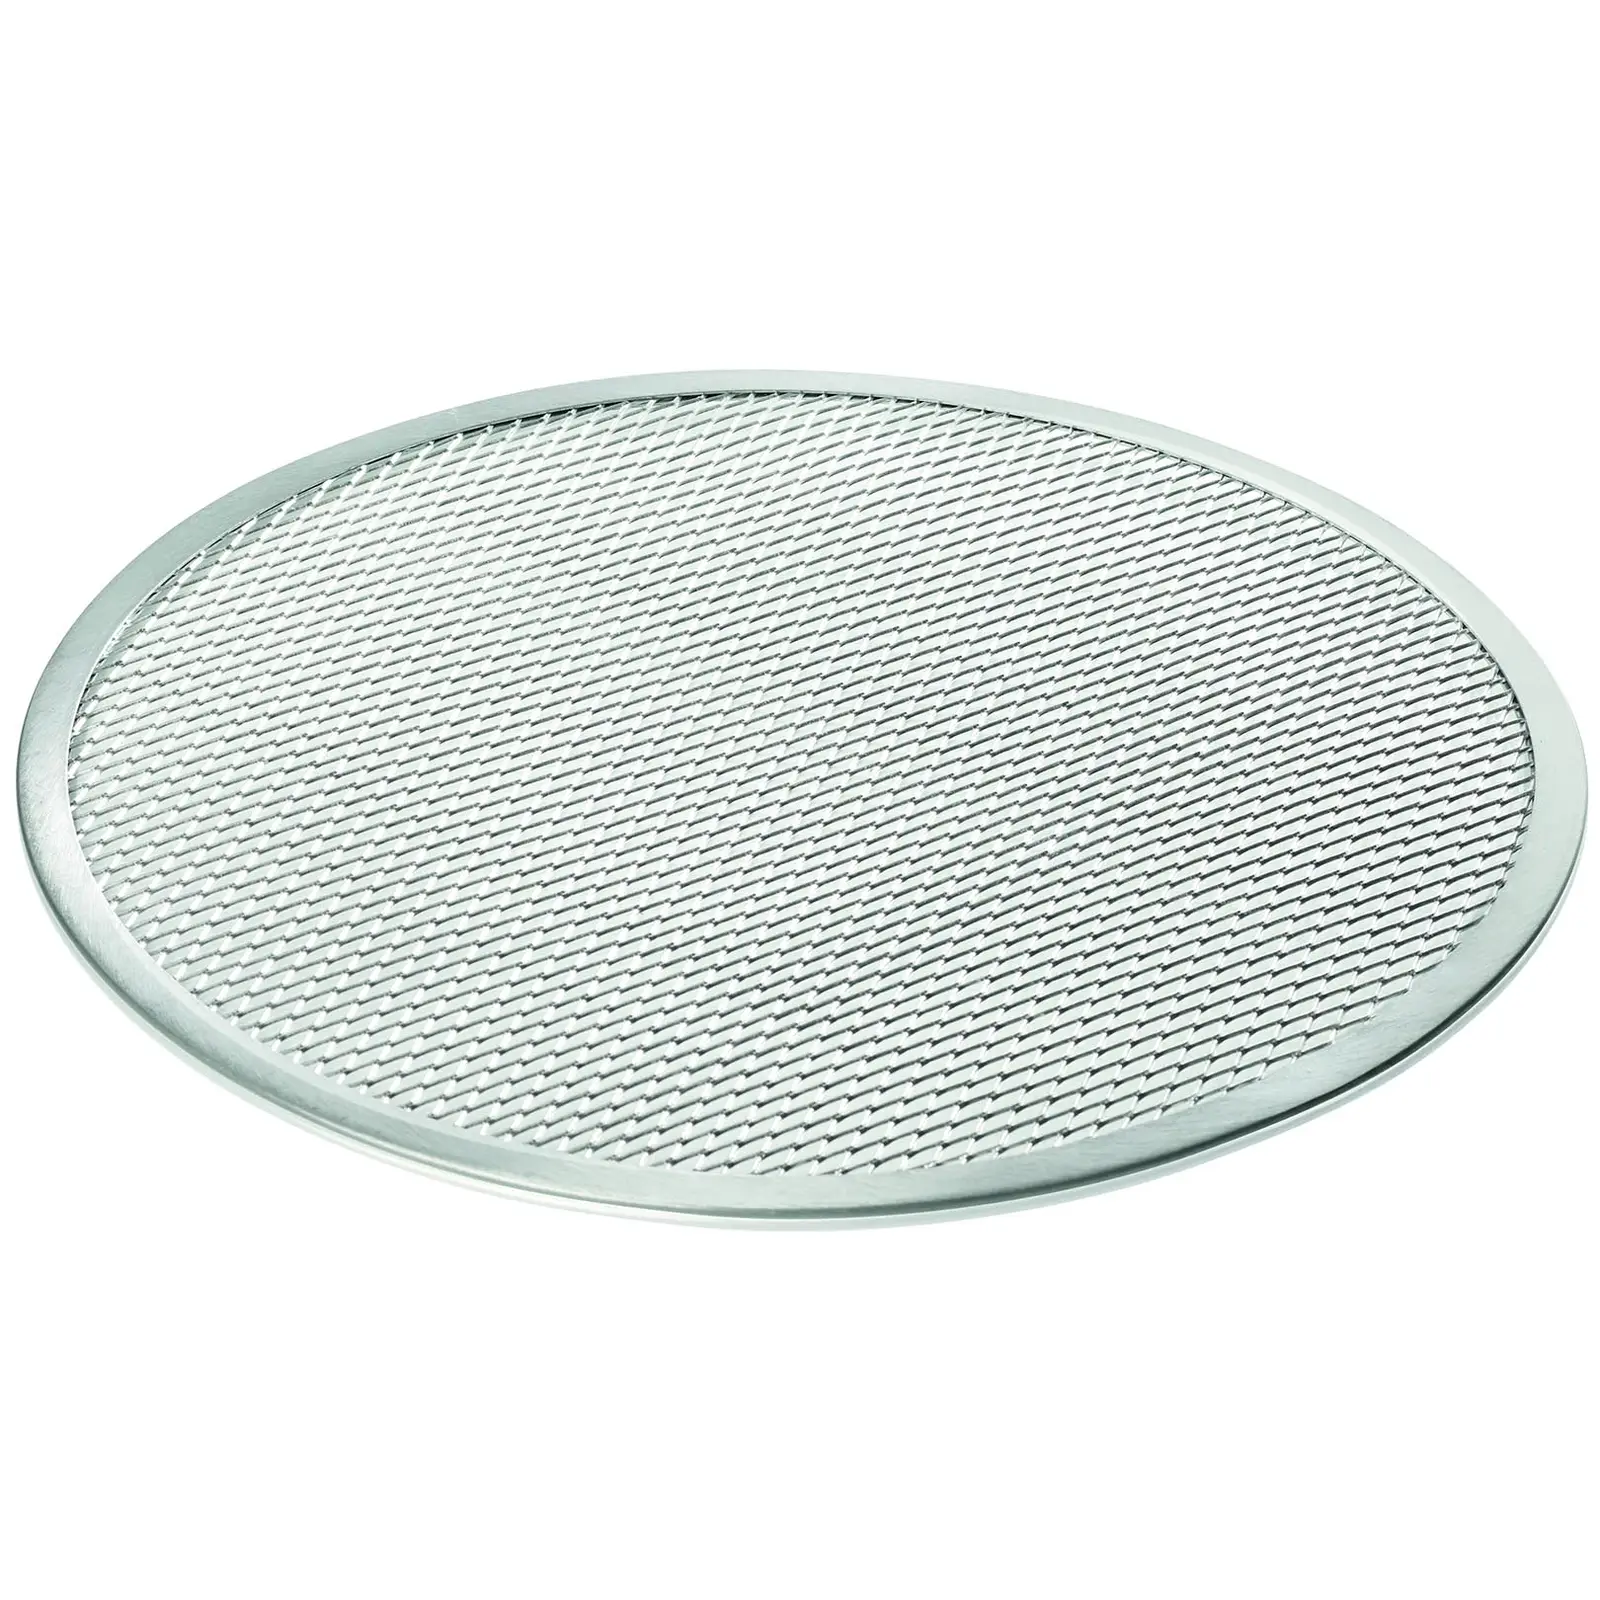 Plaque pizza - Ø50 cm - grille aluminium